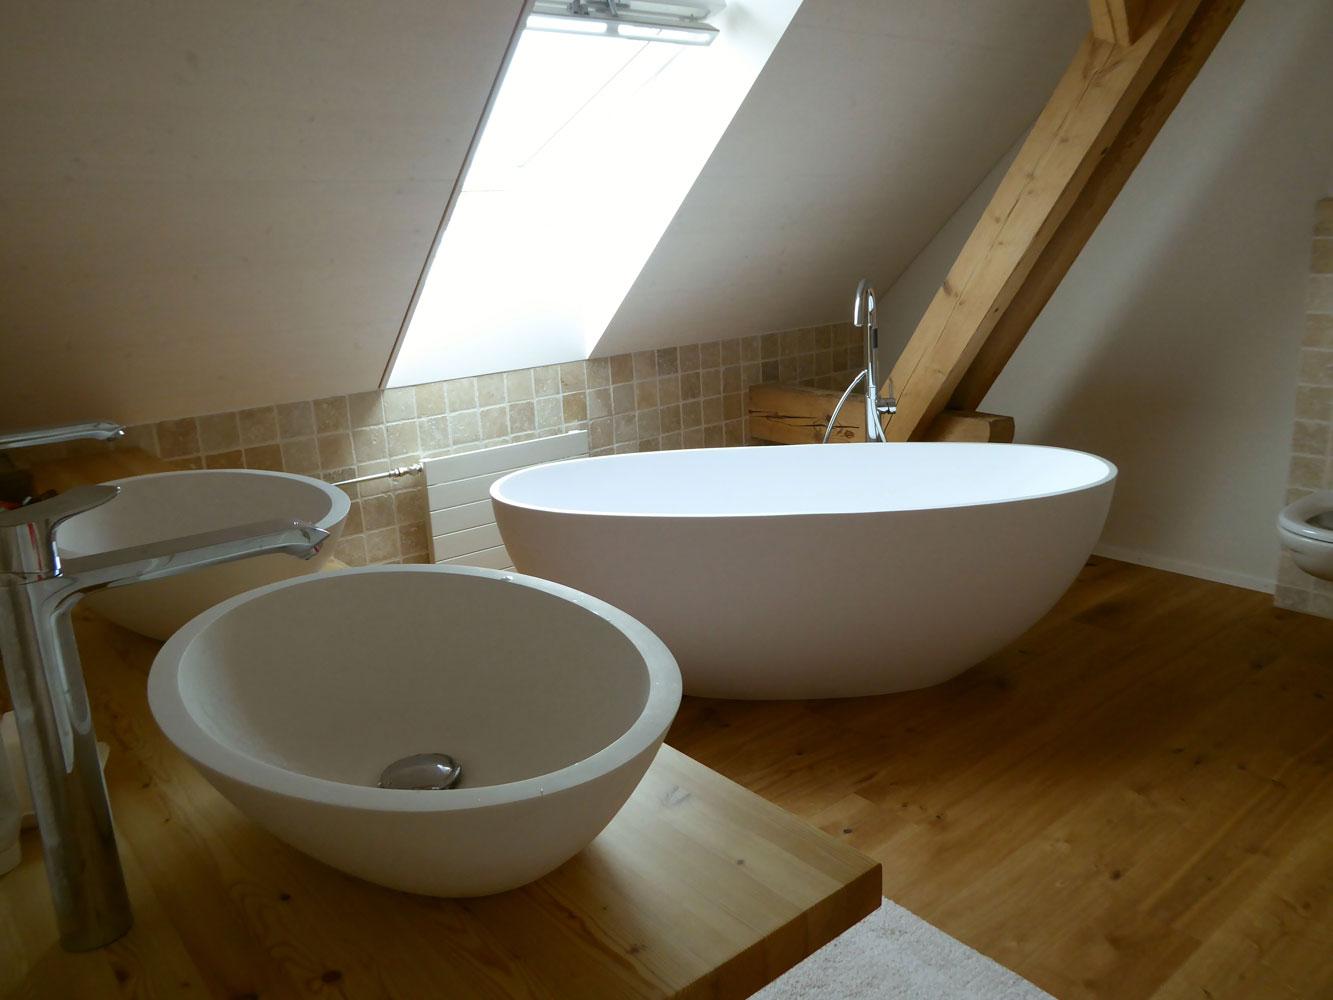 Badezimmer mit freistehender Badewanne Piemont Medio #dachschräge #badewanne #badezimmer ©Bädermax